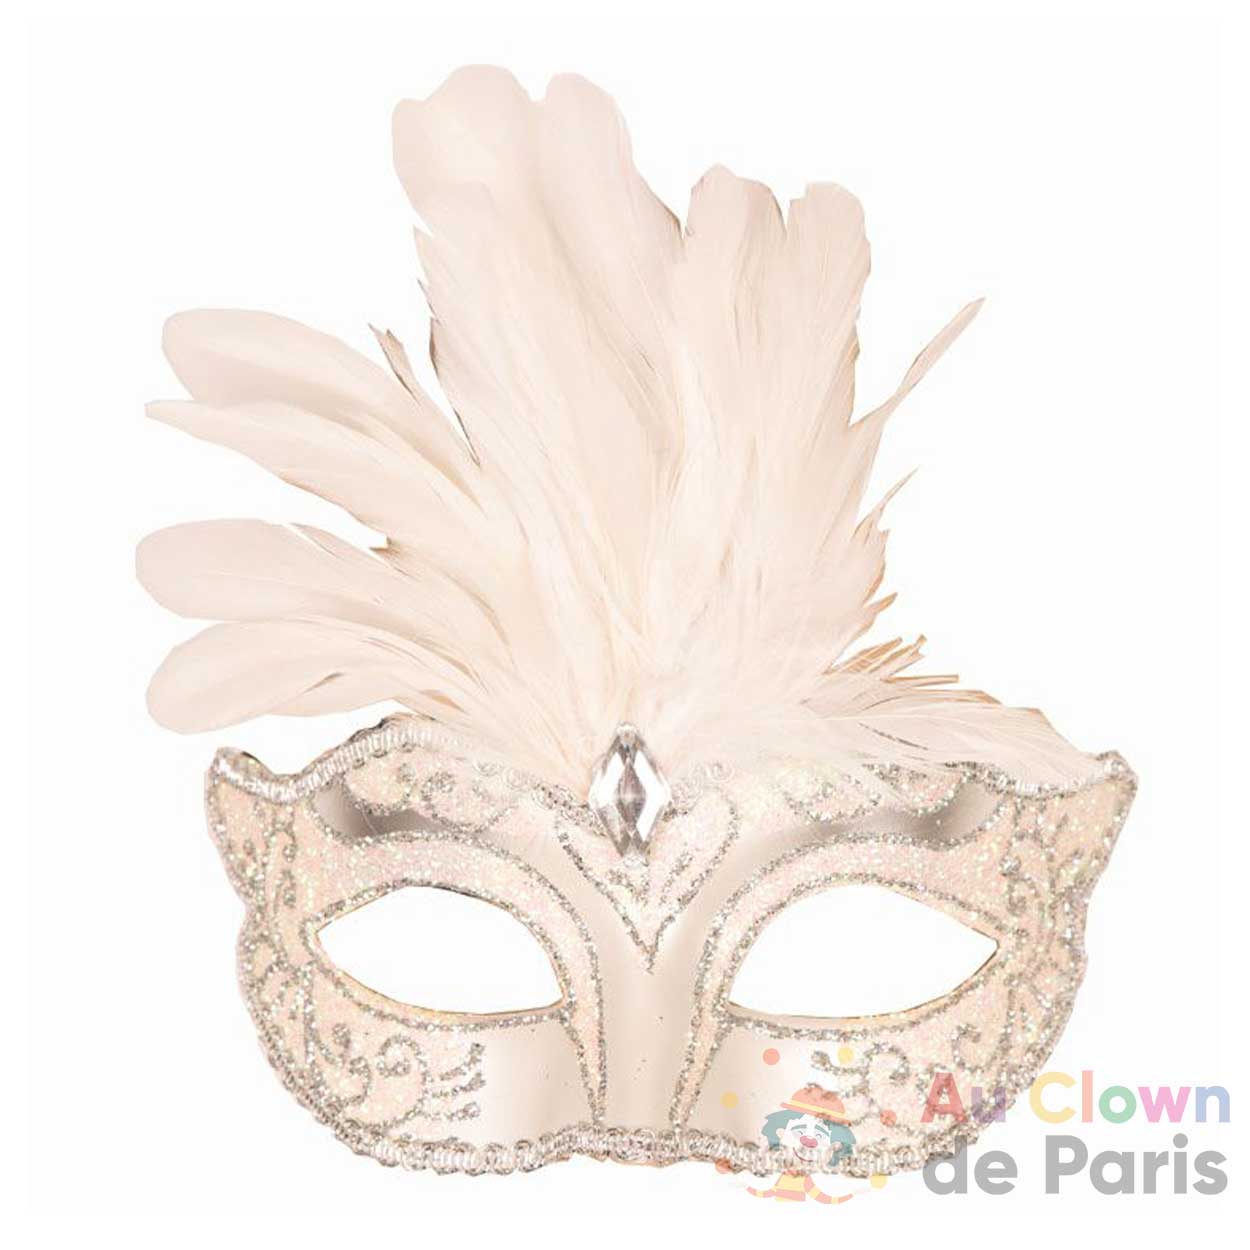 Masque loup vénitien noir pour femme : Carnaval, bal masqué